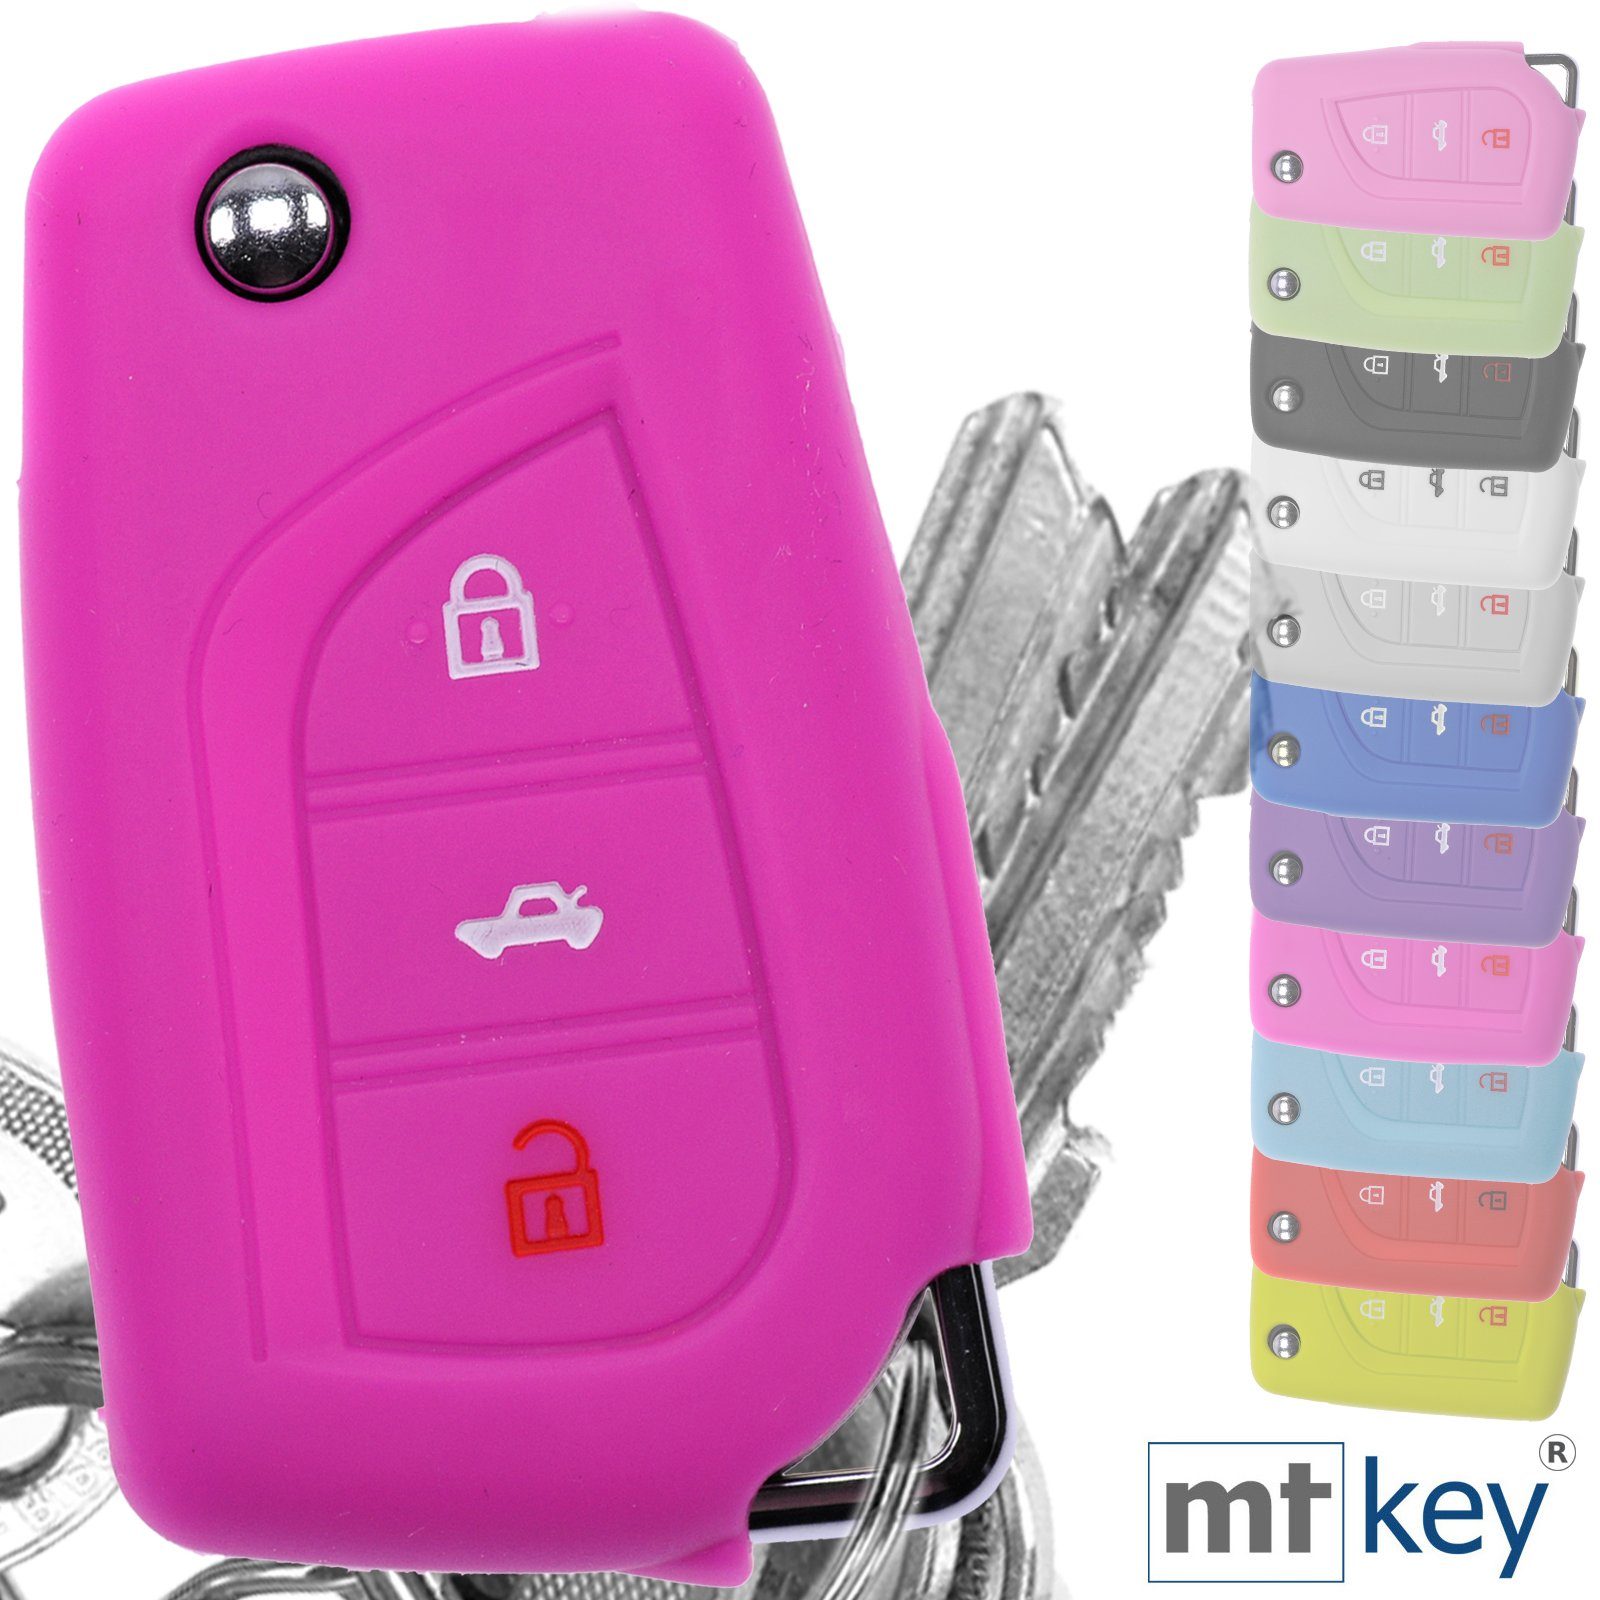 Softcase Autoschlüssel AURIS Klappschlüssel Tasten für Corolla 3 mt-key Silikon Schlüsseltasche Pink, Schutzhülle Toyota Avensis